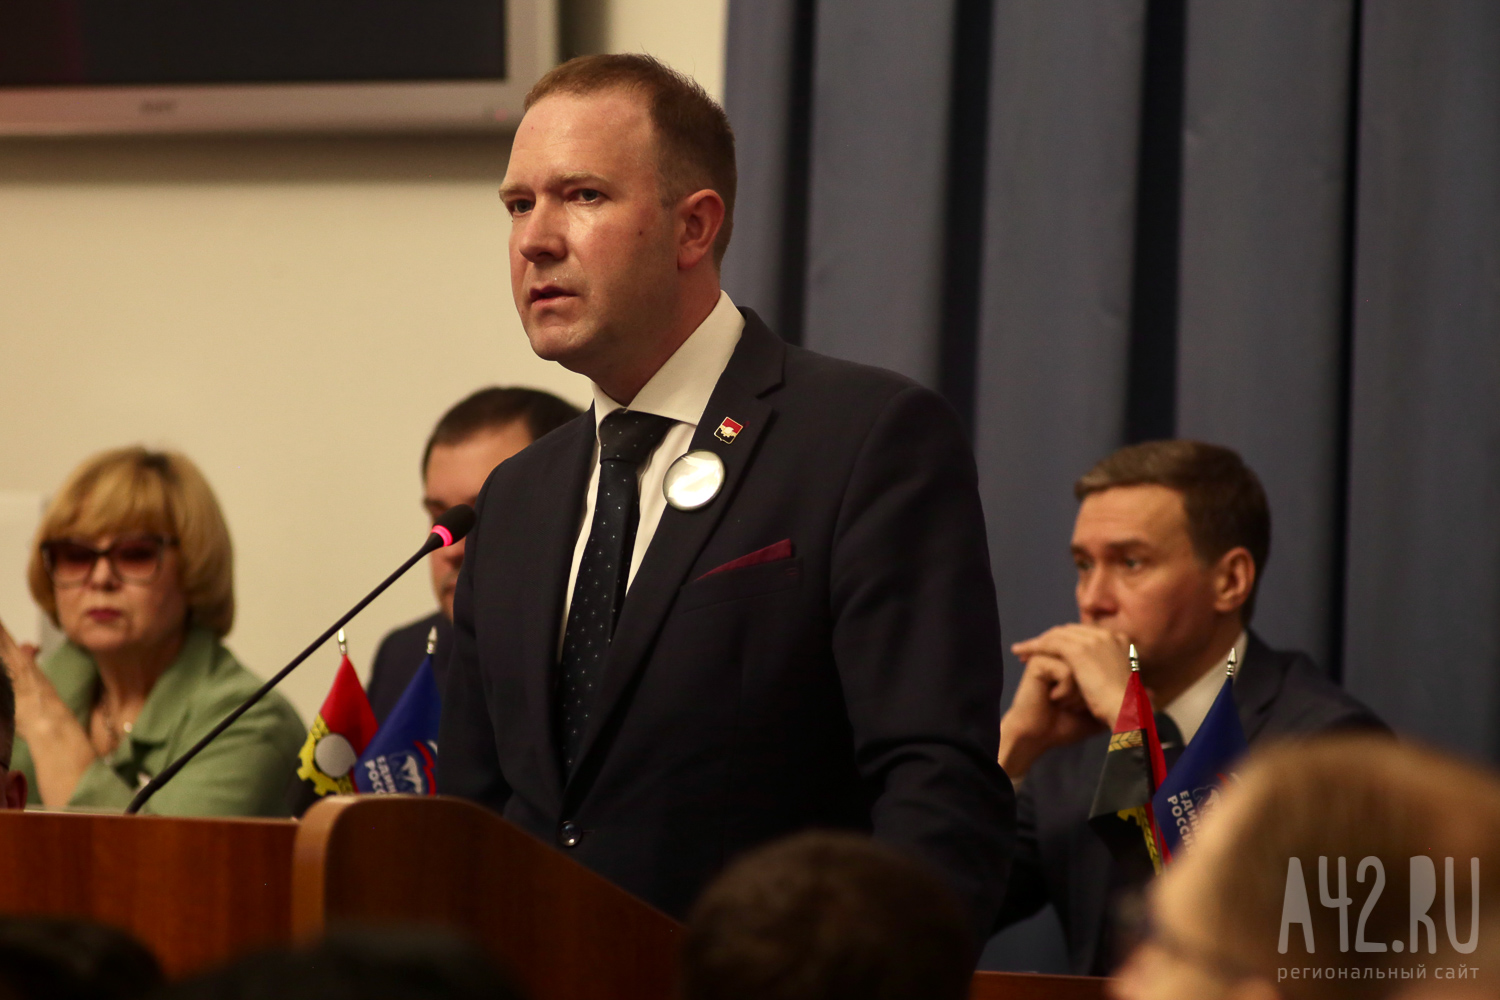 Главой города Кемерово избрали Дмитрия Анисимова